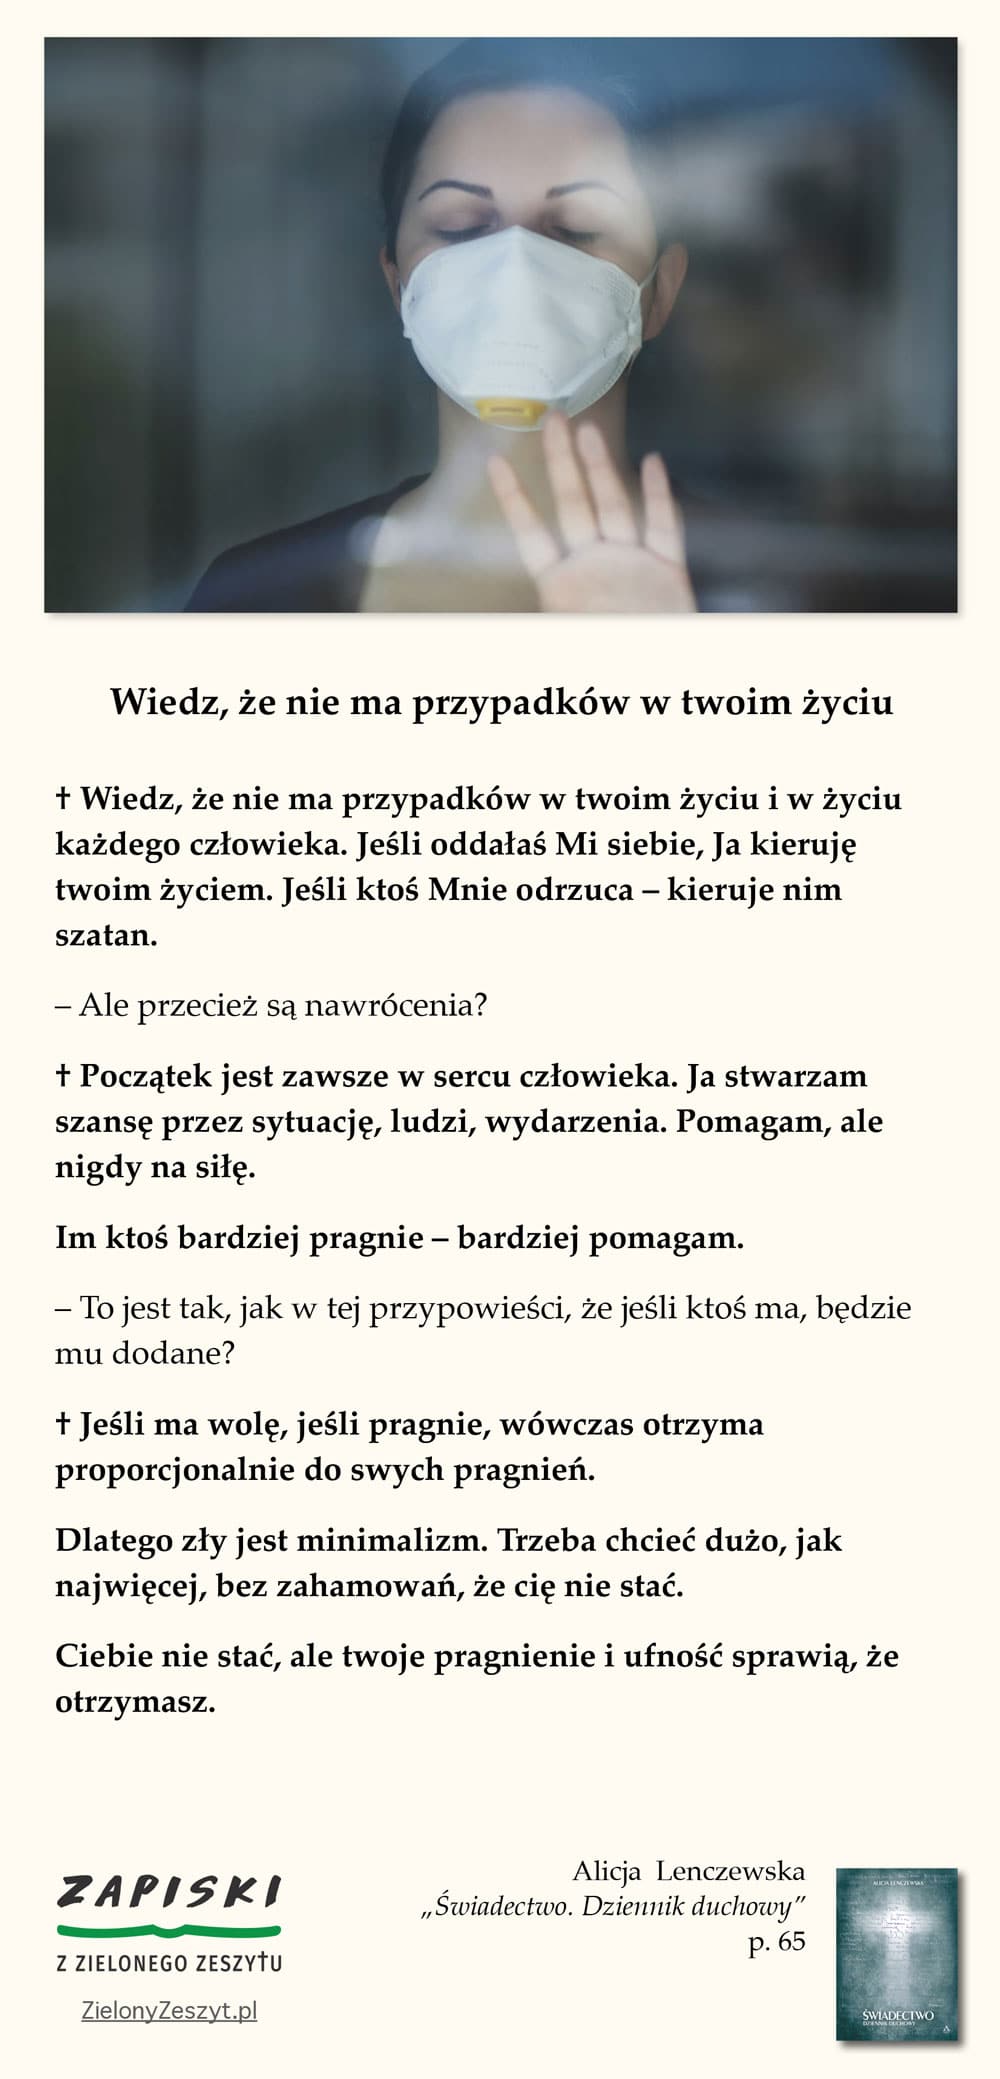 Alicja Lenczewska, „Świadectwo. Dziennik duchowy”, p. 65 (Wiedz, że nie ma przypadków w twoim życiu)